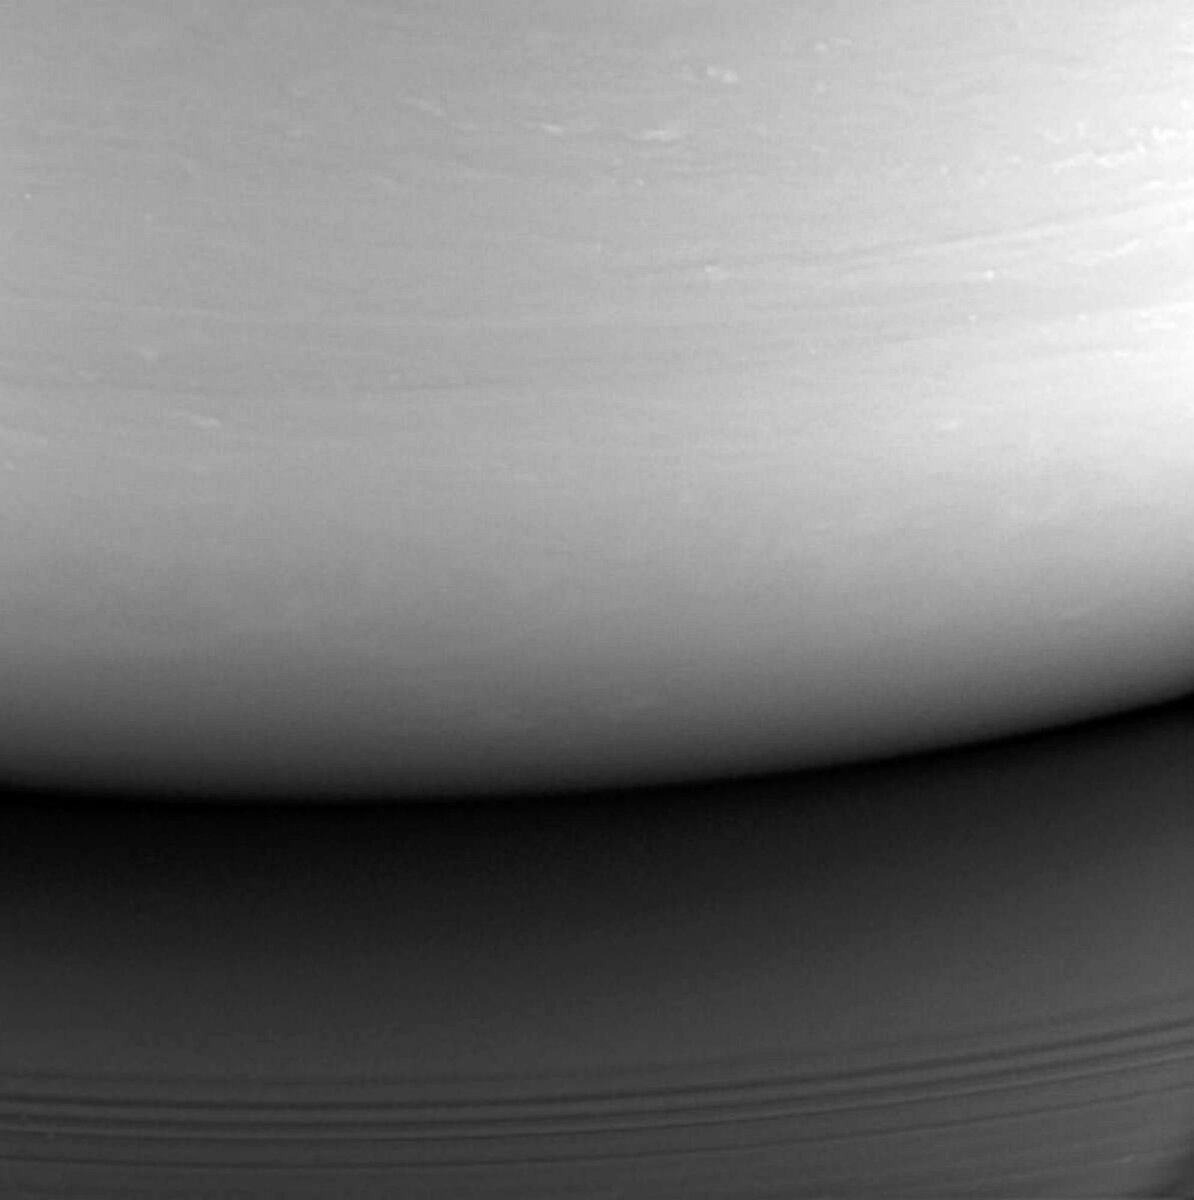 Фото: NASA / Атмосфера Сатурна. Последний снимок, сделанный зондом "Кассини"